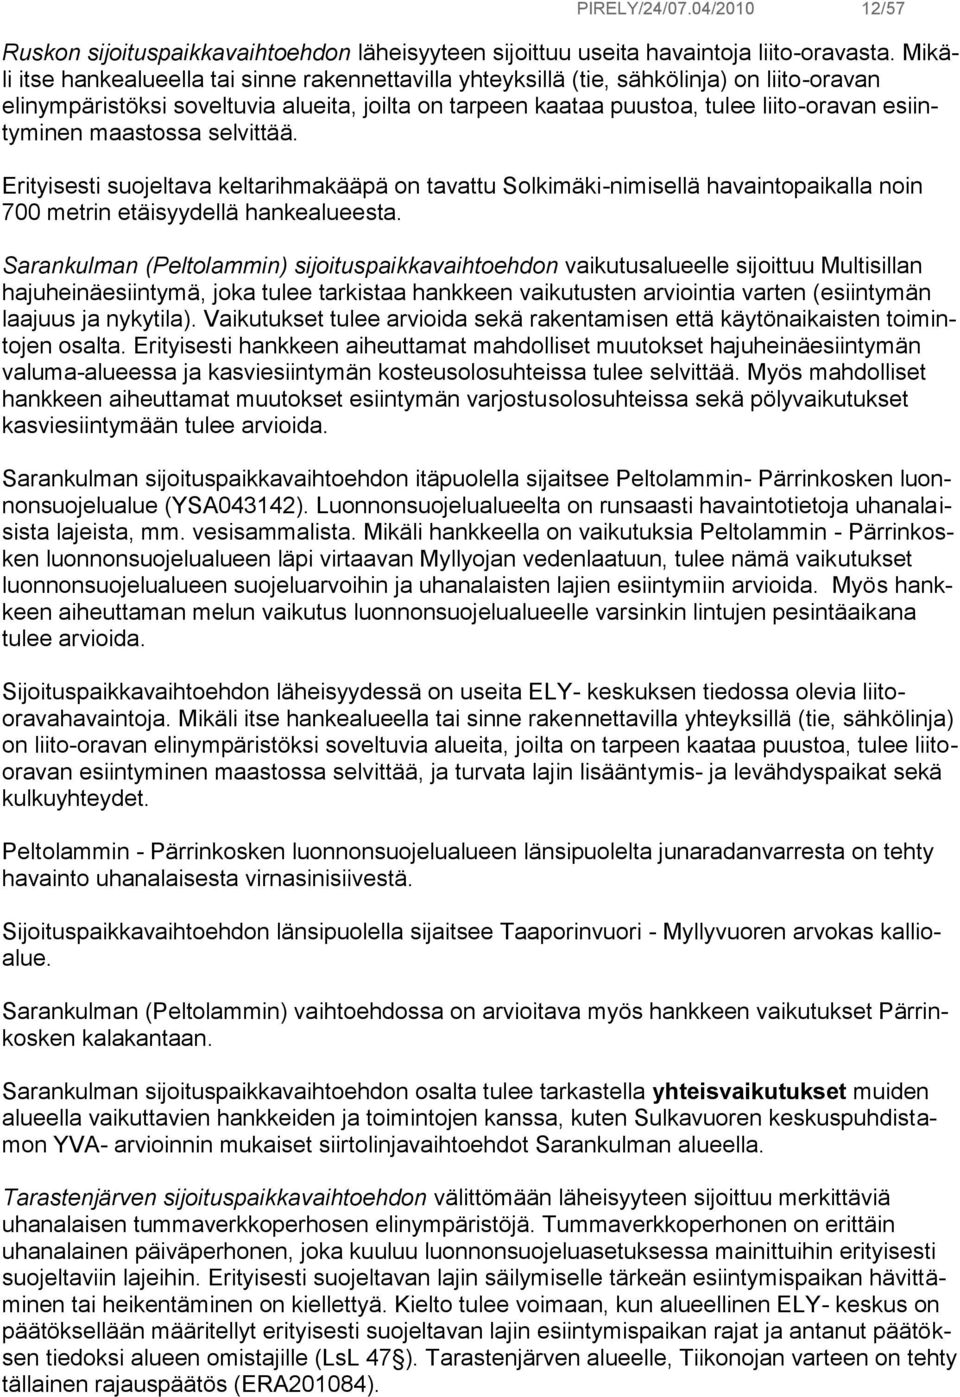 esiintyminen maastossa selvittää. Erityisesti suojeltava keltarihmakääpä on tavattu Solkimäki-nimisellä havaintopaikalla noin 700 metrin etäisyydellä hankealueesta.